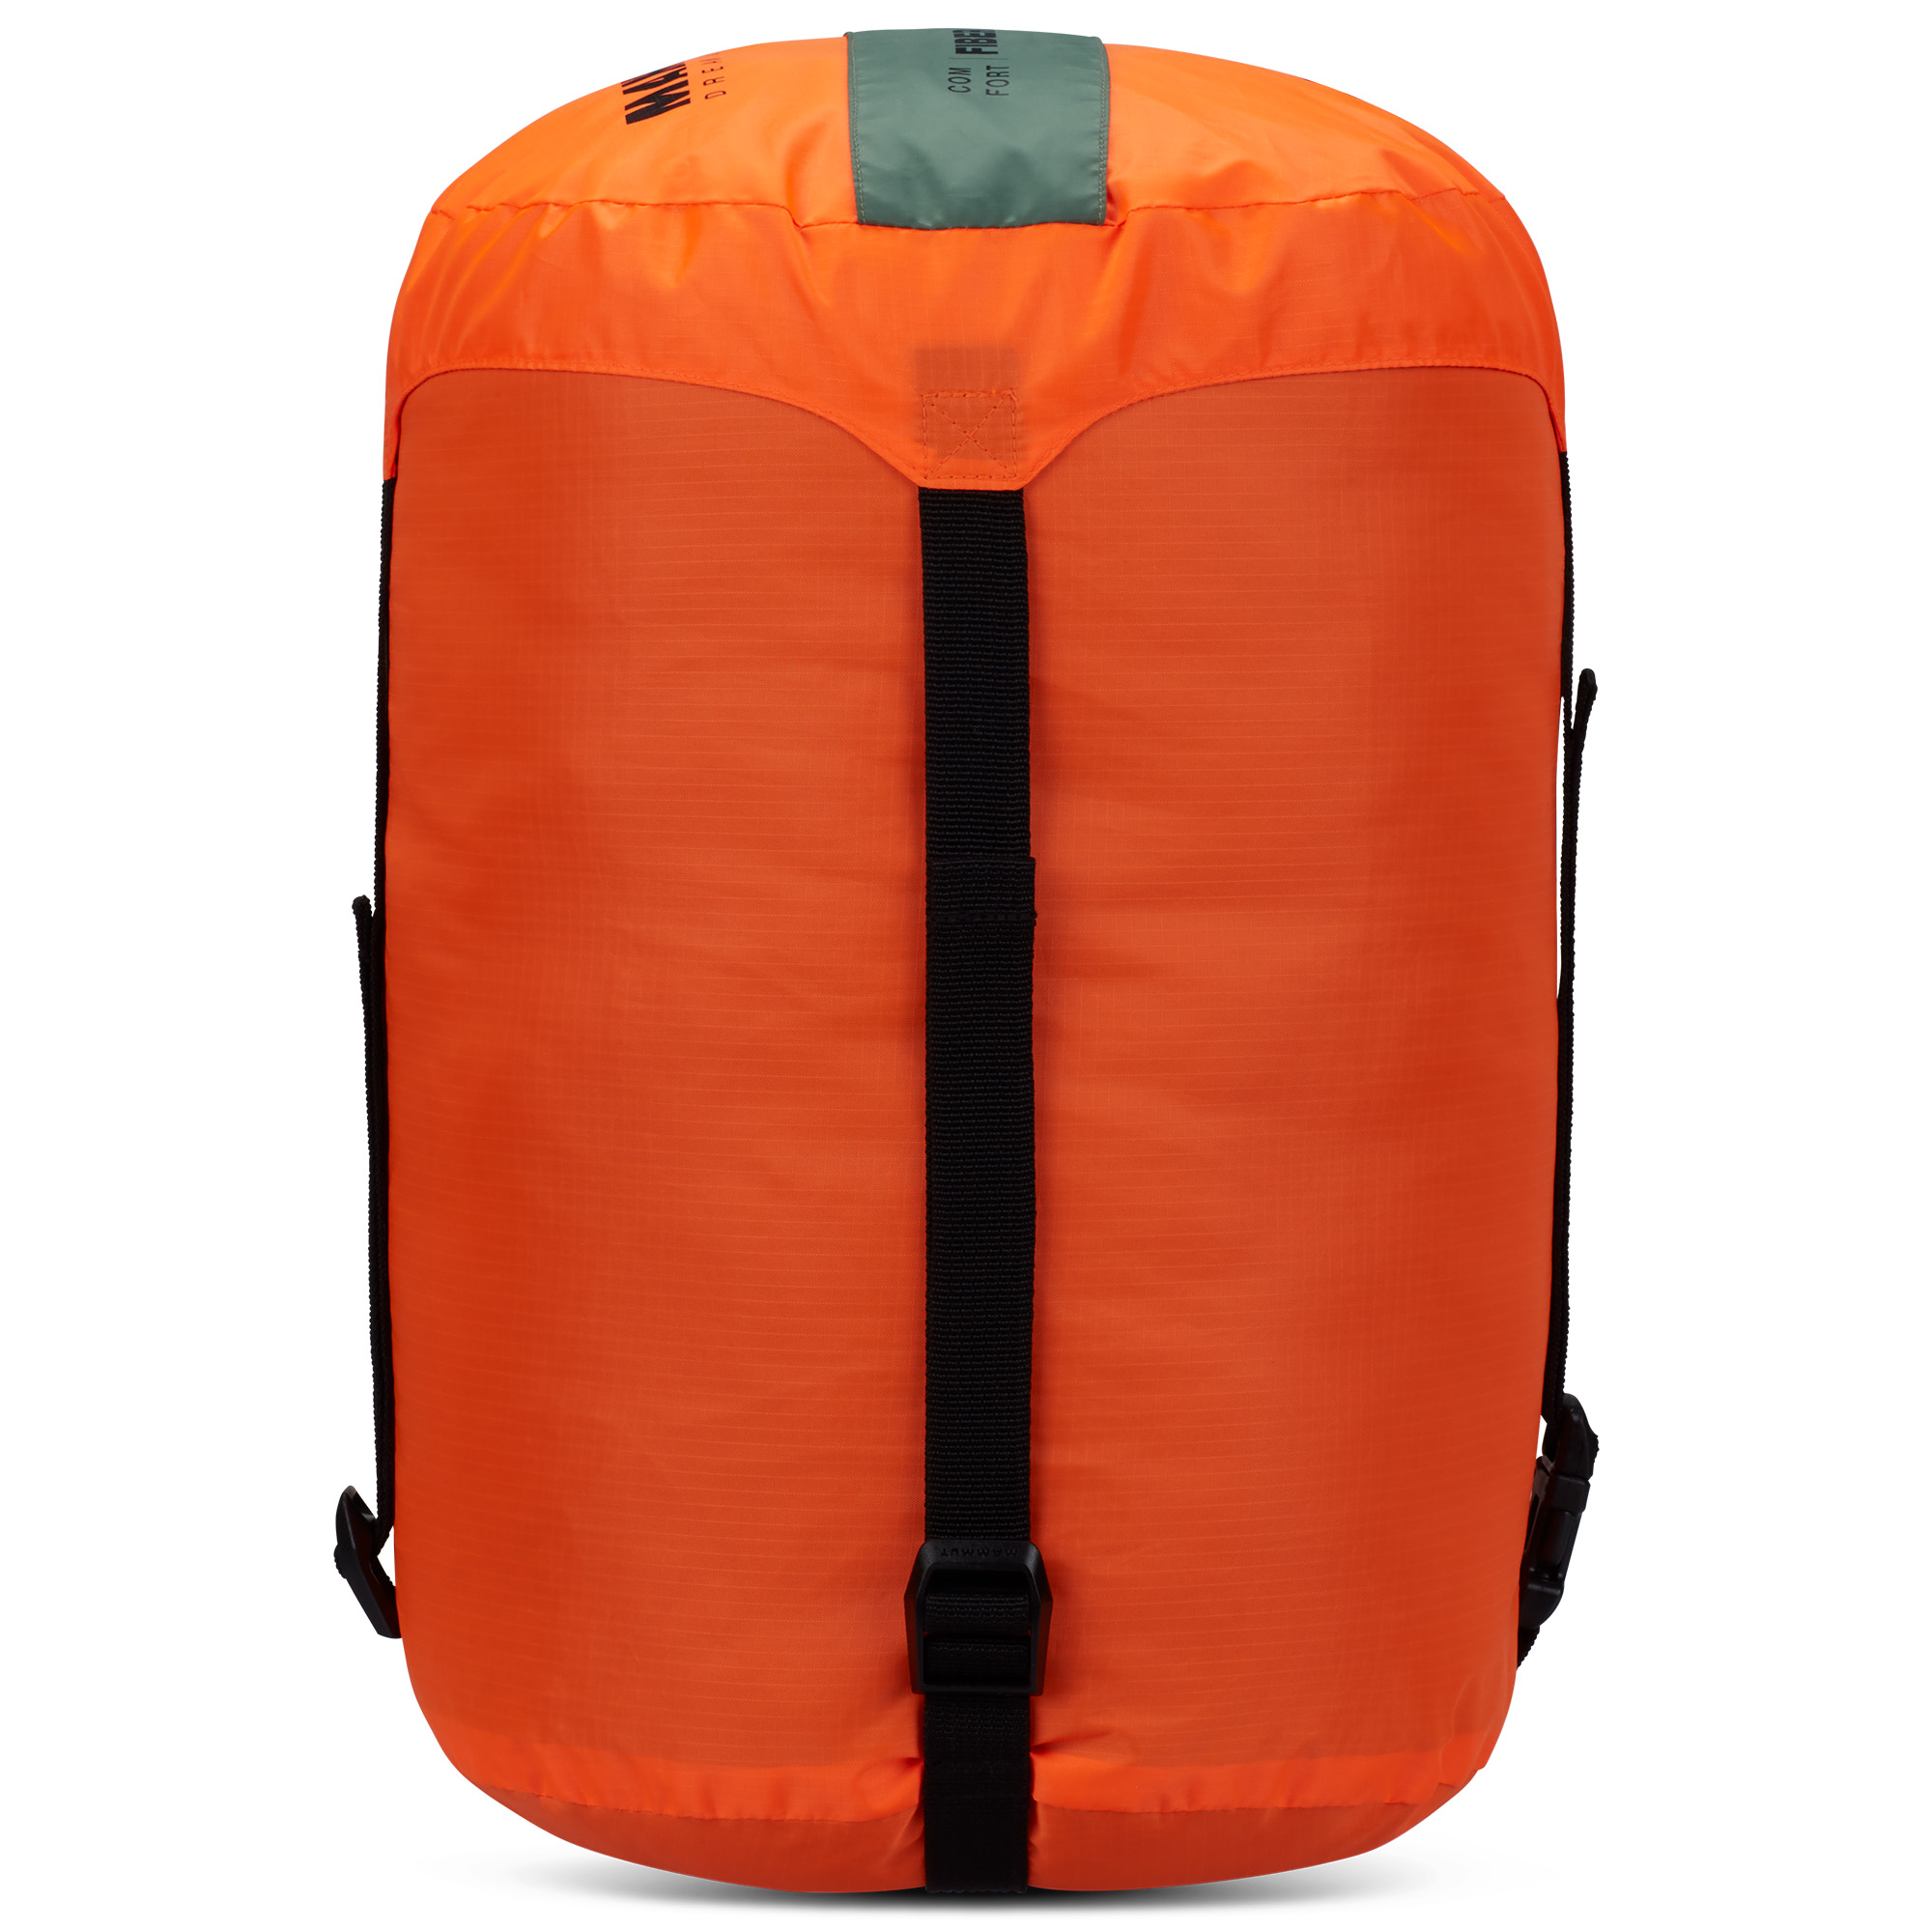 Mammut Comfort Fiber Bag -5C Lightweight Sleeping Bag